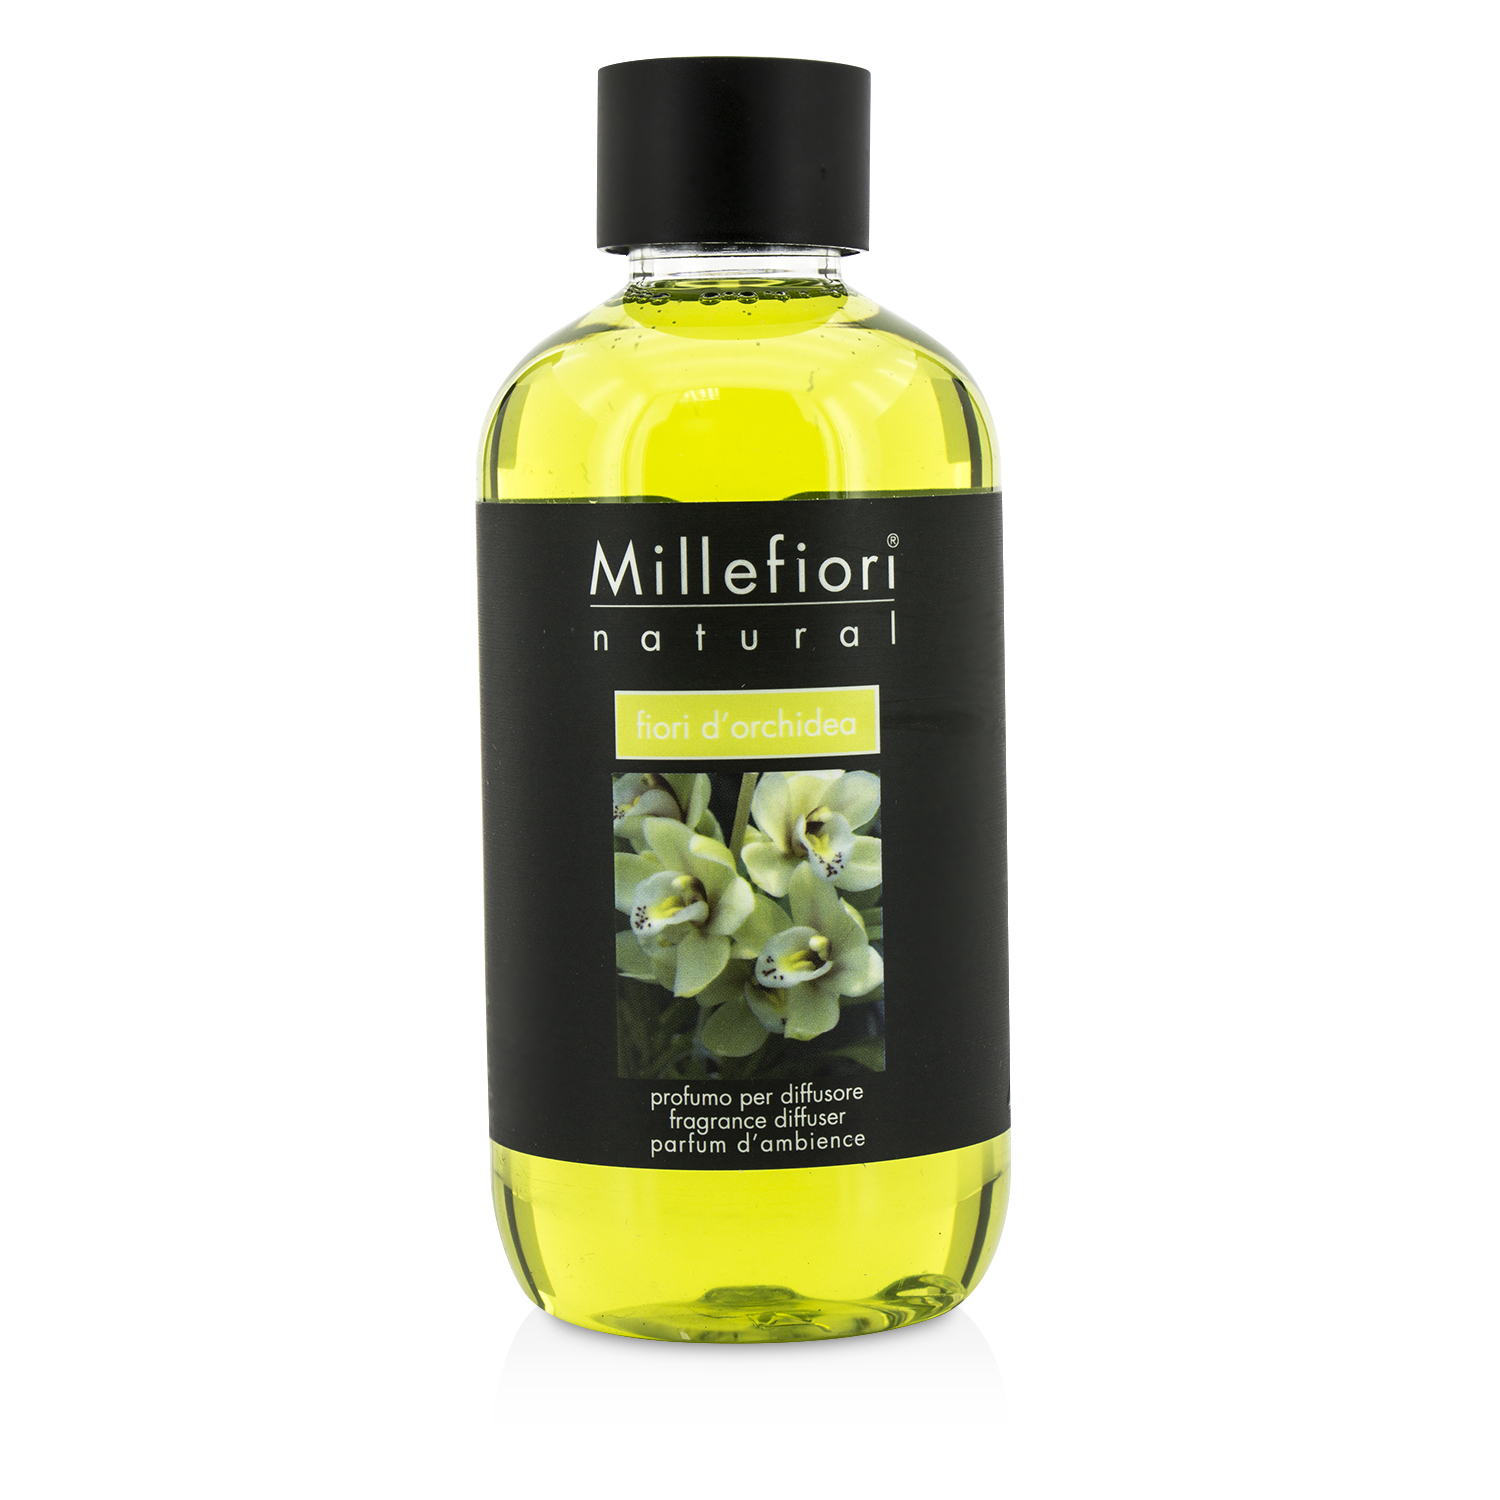 Natural Fragrance Diffuser Refill - Fiori DOrchidea Millefiori Image